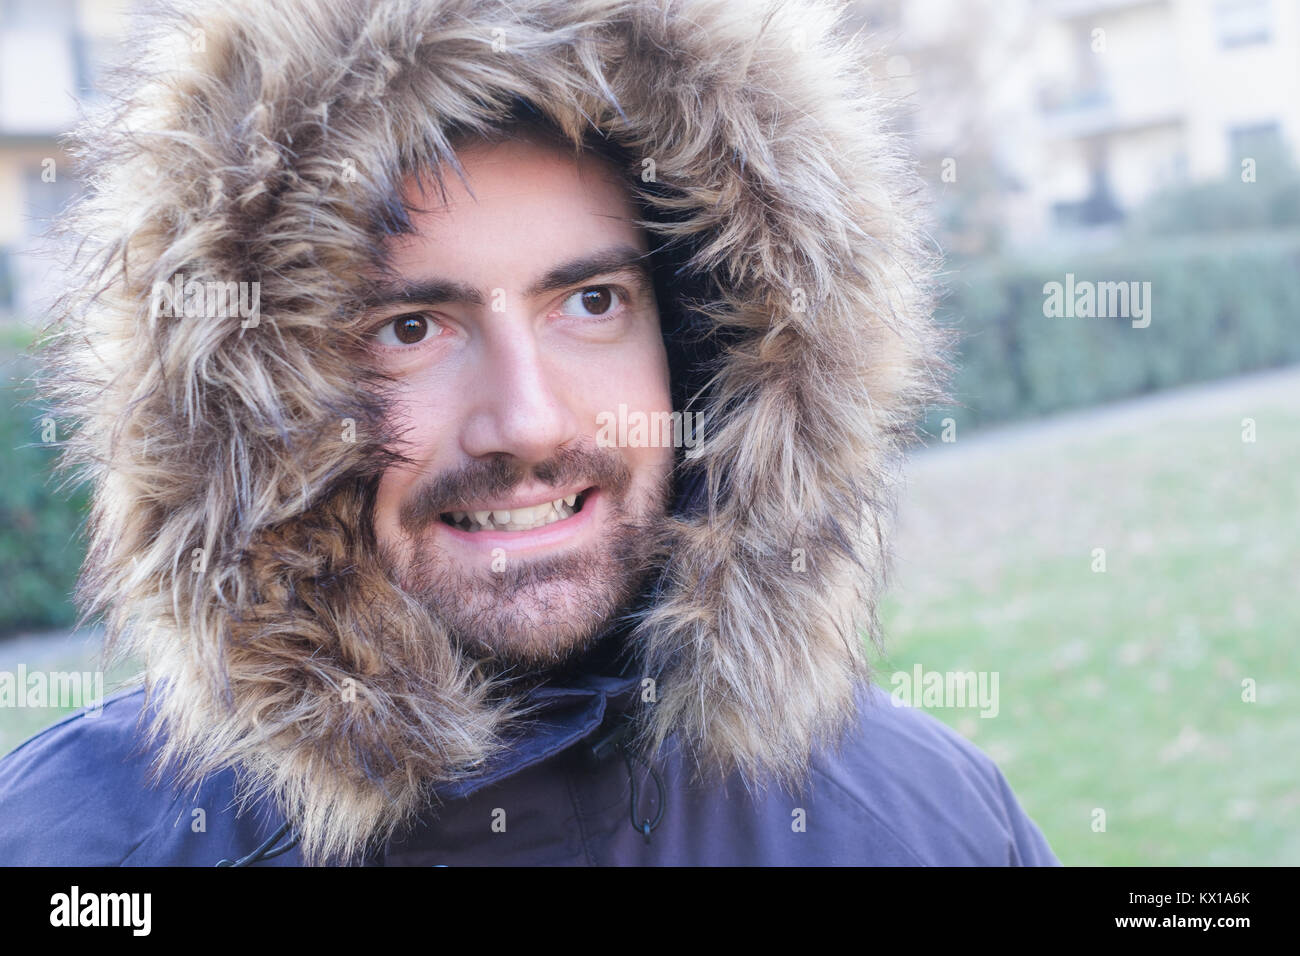 Mann verkleidet in warme Kleidung, um sich vor Kälte zu schützen  Stockfotografie - Alamy